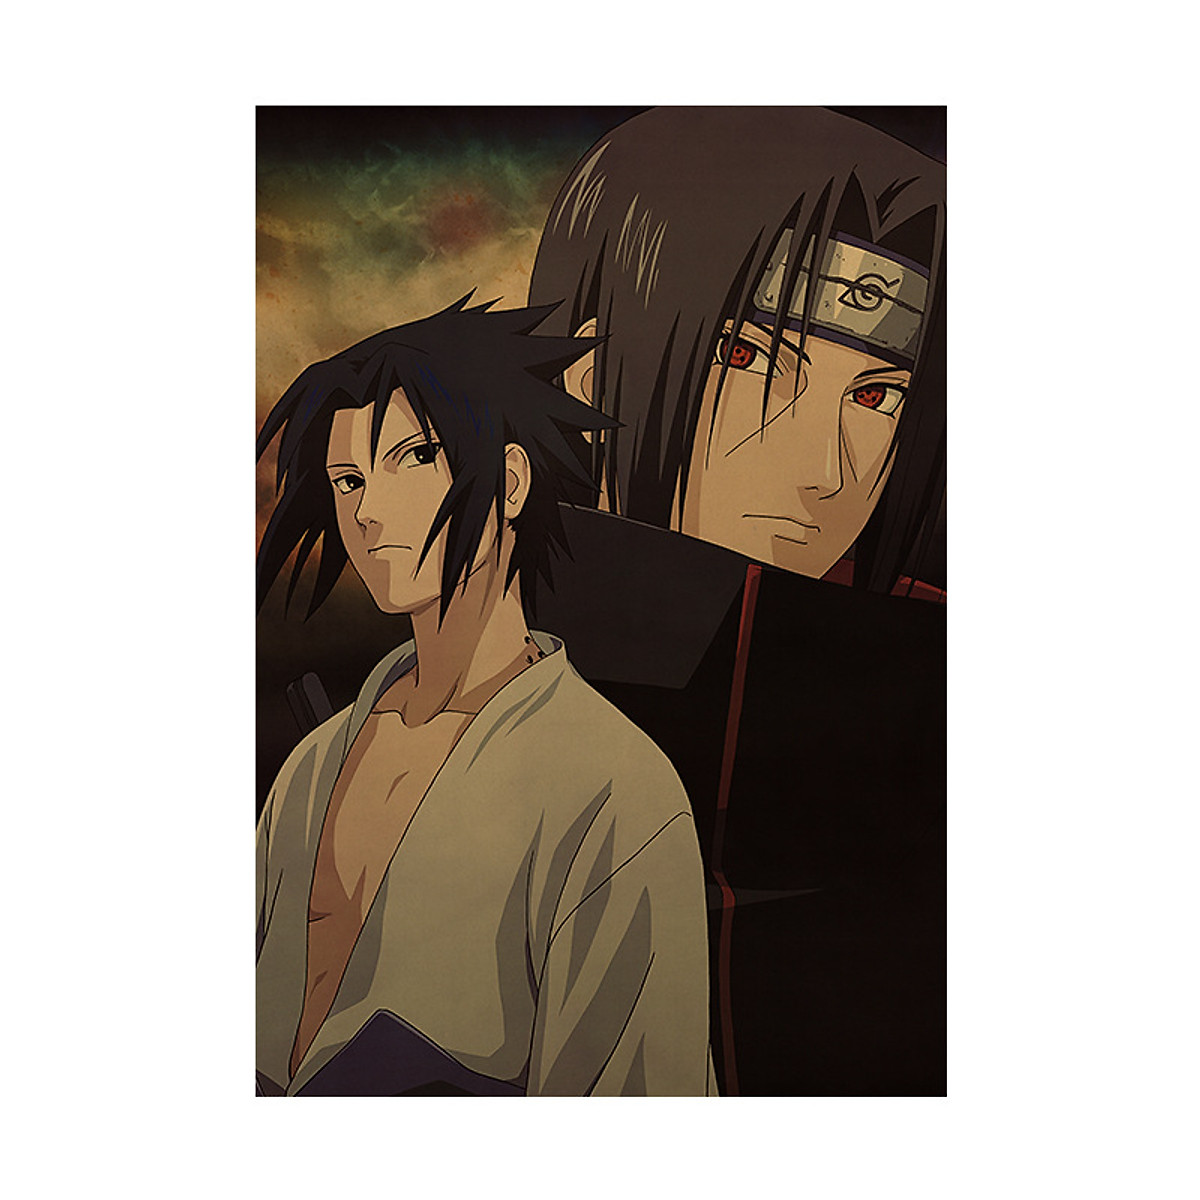 Poster Itachi và Sasuke: Với bức trang trí về Itachi và Sasuke, bạn sẽ có một không gian thật đặc biệt thể hiện tình cảm đầy ý nghĩa của đôi anh em. Khám phá những chi tiết trong bức tranh, hình vẽ đẹp mắt và tạo ra không gian mang phong cách Naruto đầy cá tính.